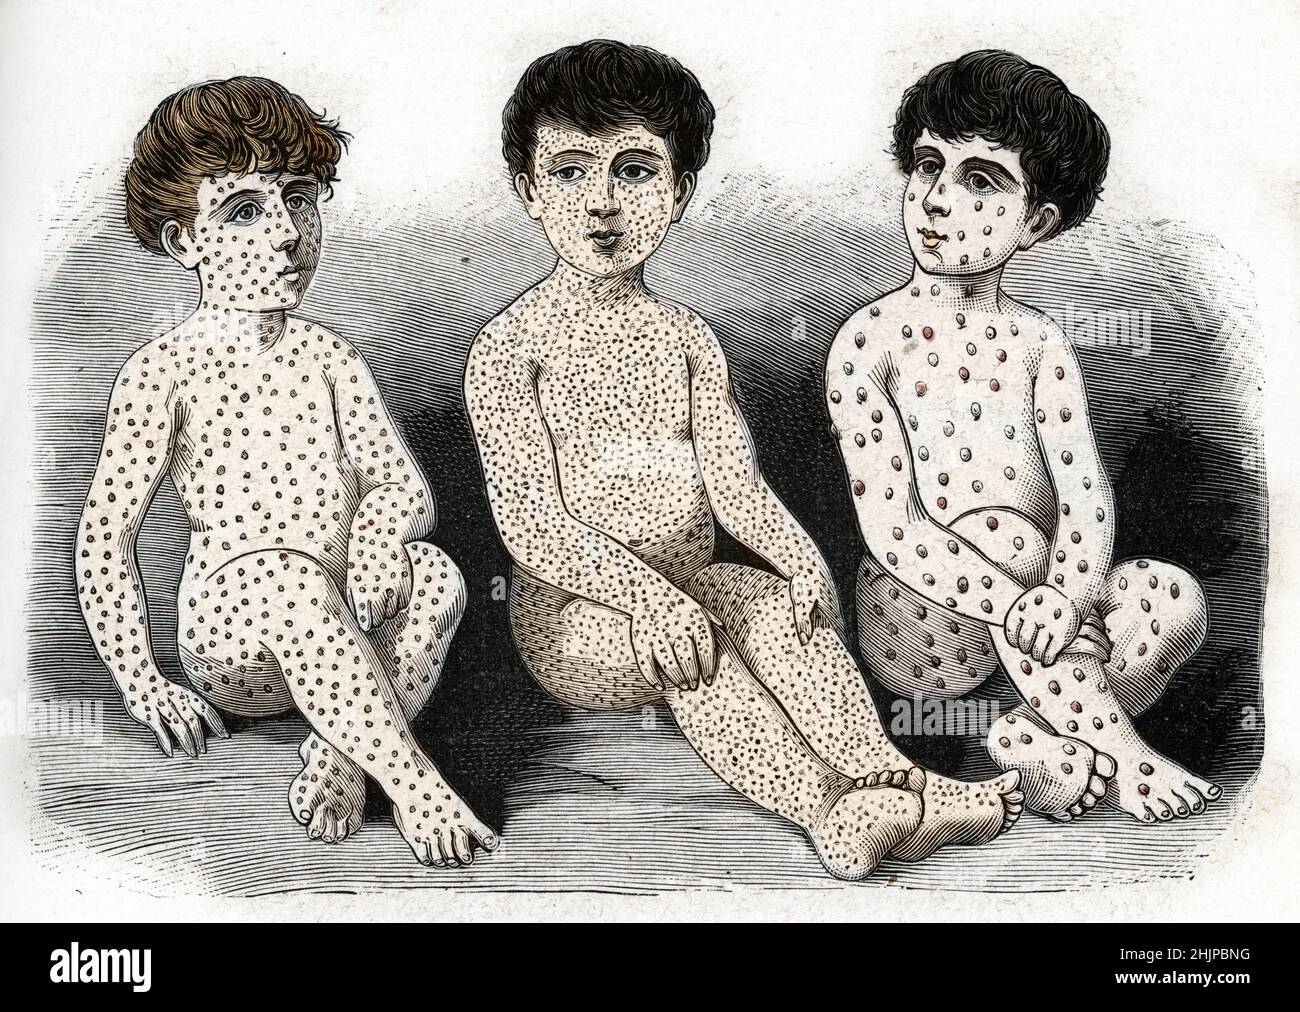 Malattie infantili : trois enfants atteints de rougeole, scarlatine et varicelle - (malattie dell'Infanzia: Tre bambini con morbillo, scarlattina e varicella) gravure tiree de 'Medecine illustrree' 1888 Collection privee Foto Stock